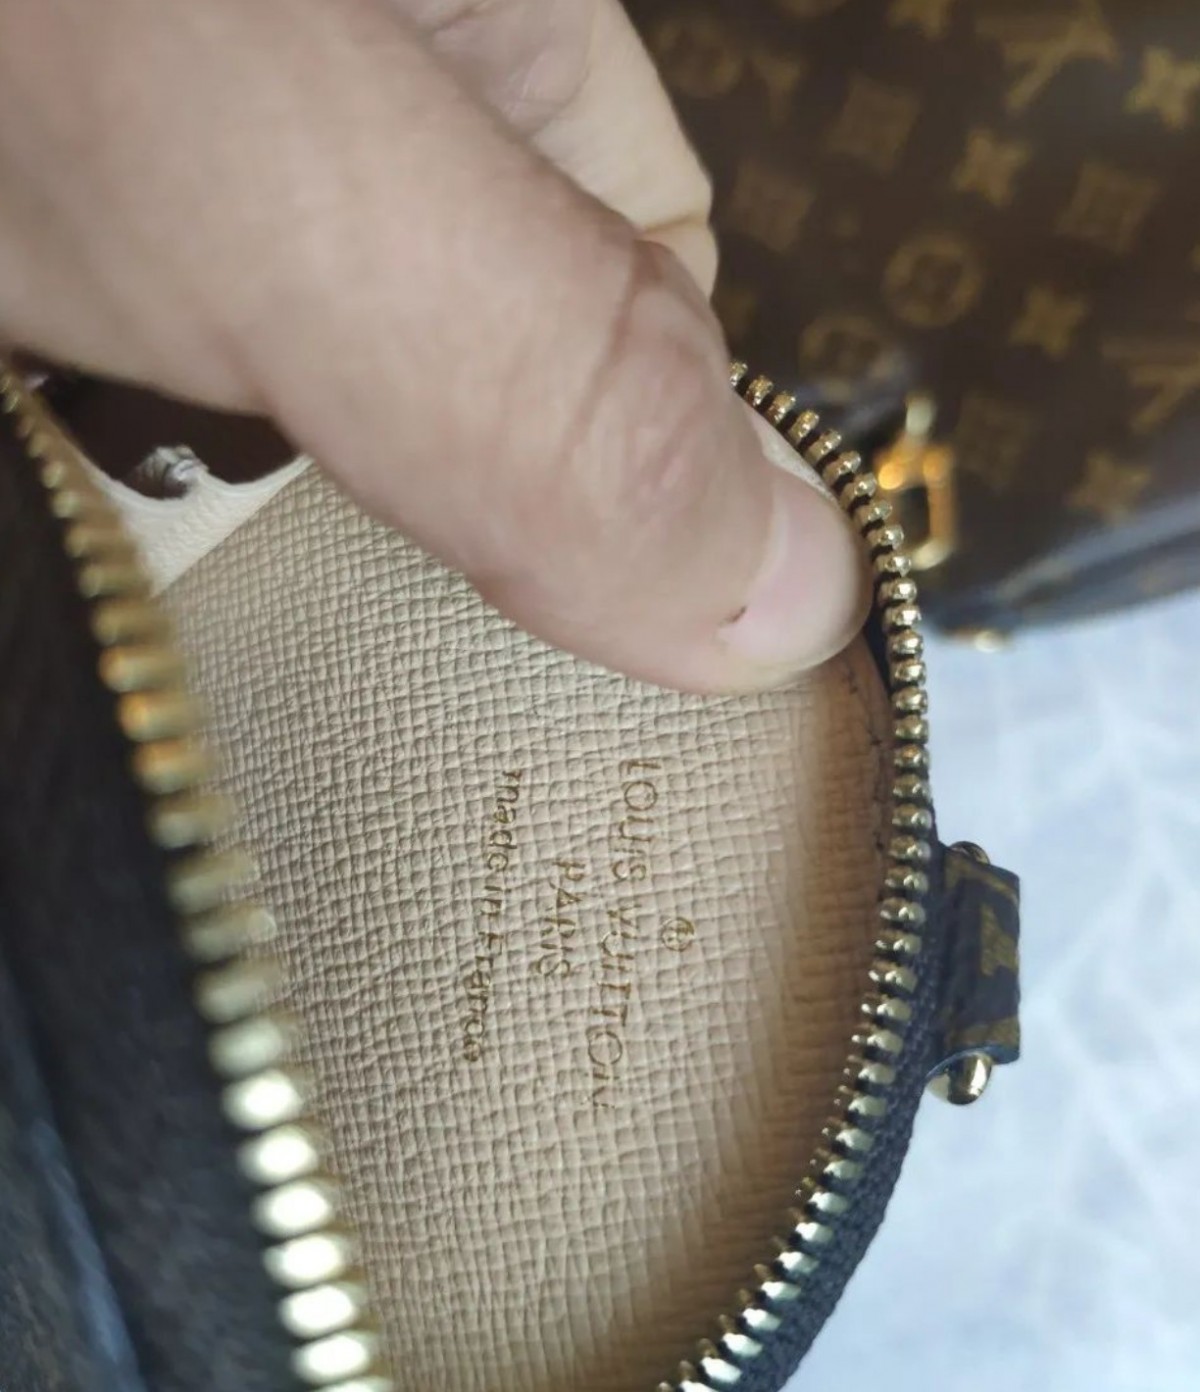 គុណភាពកំពូល? កាបូប Louis Vuitton MULTI POCHETTE ACCESSORIES តម្លៃ 139$ មិនគួរអោយជឿ? (2022 ចុងក្រោយបំផុត)- ហាងអនឡាញកាបូប Louis Vuitton ក្លែងក្លាយ គុណភាពល្អបំផុត កាបូបអ្នករចនាចម្លង ru